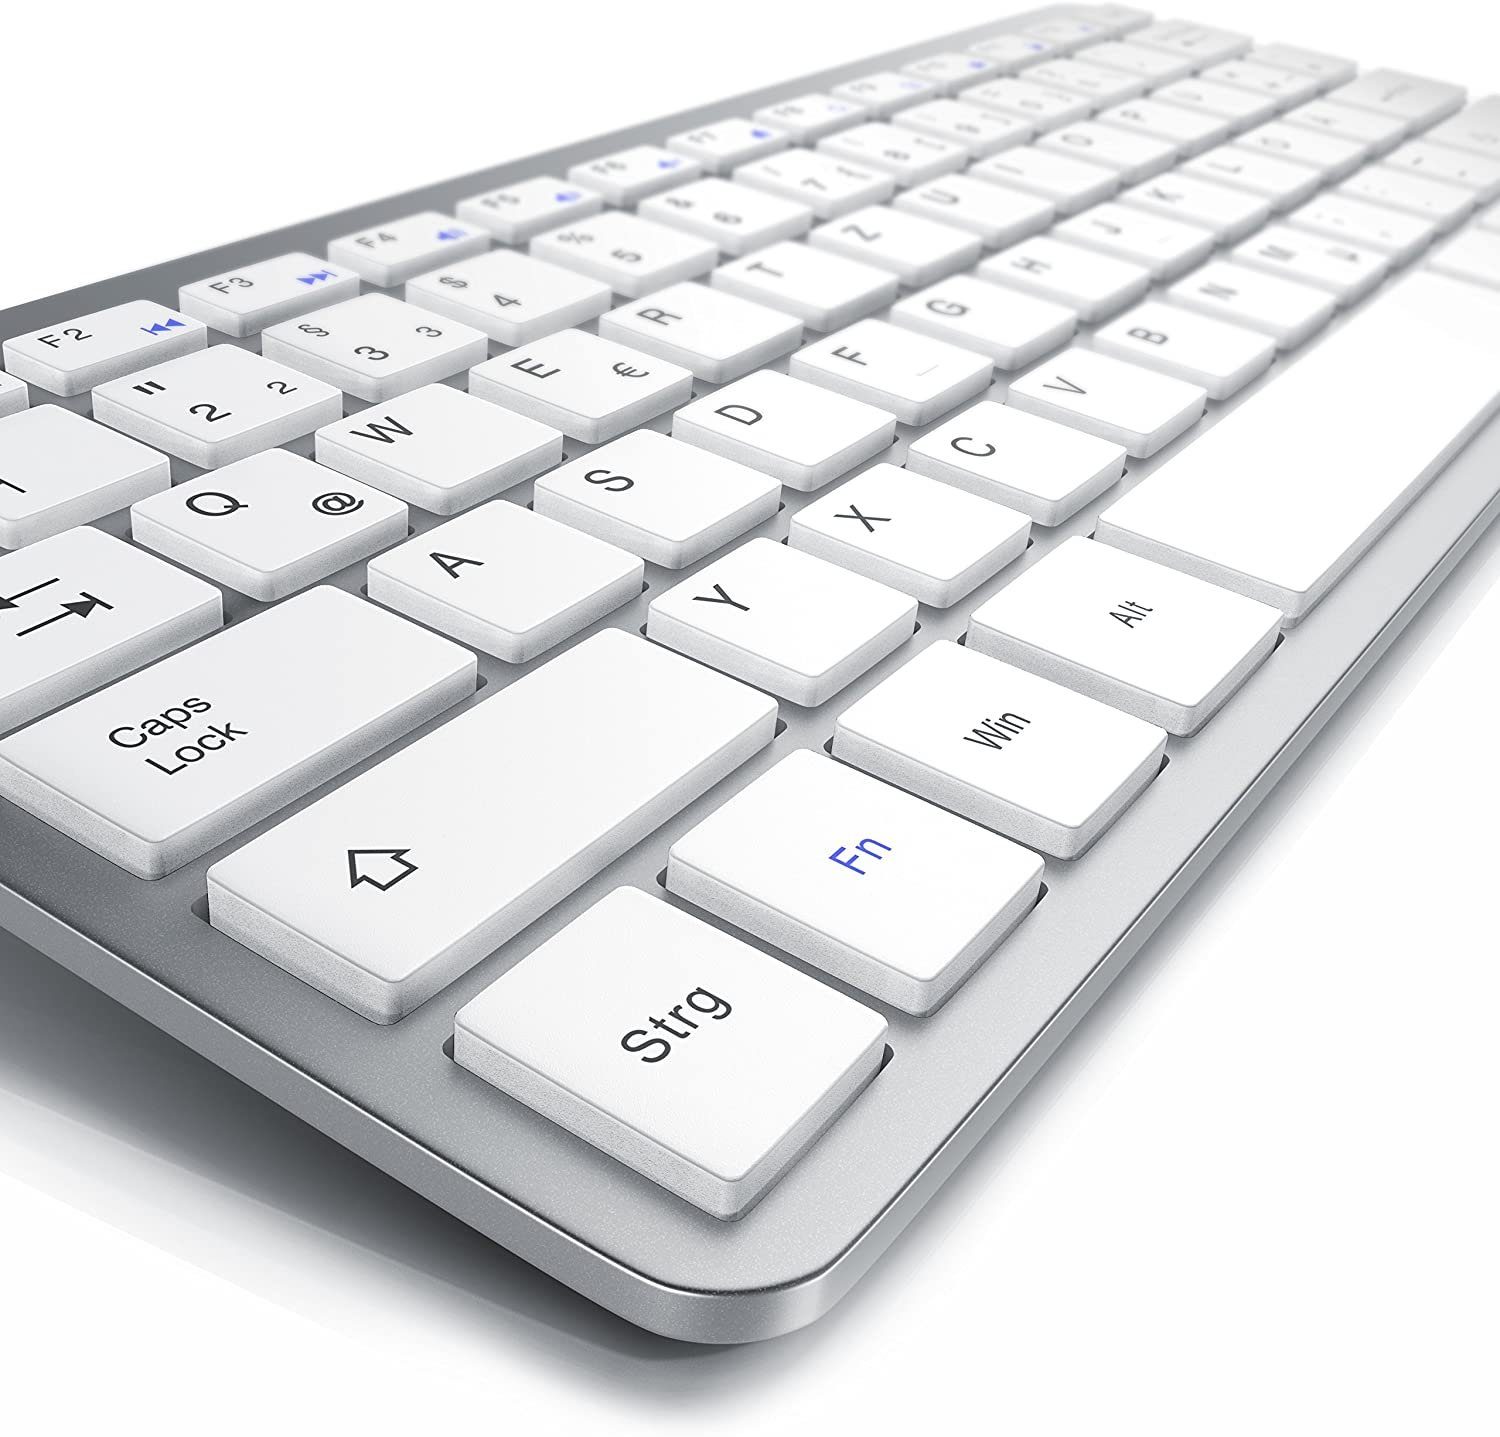 silber (2,4Ghz Wireless-Tastatur Slim Keyboard, platzsparend, CSL Kabellos) Design ergonomisch, Mini